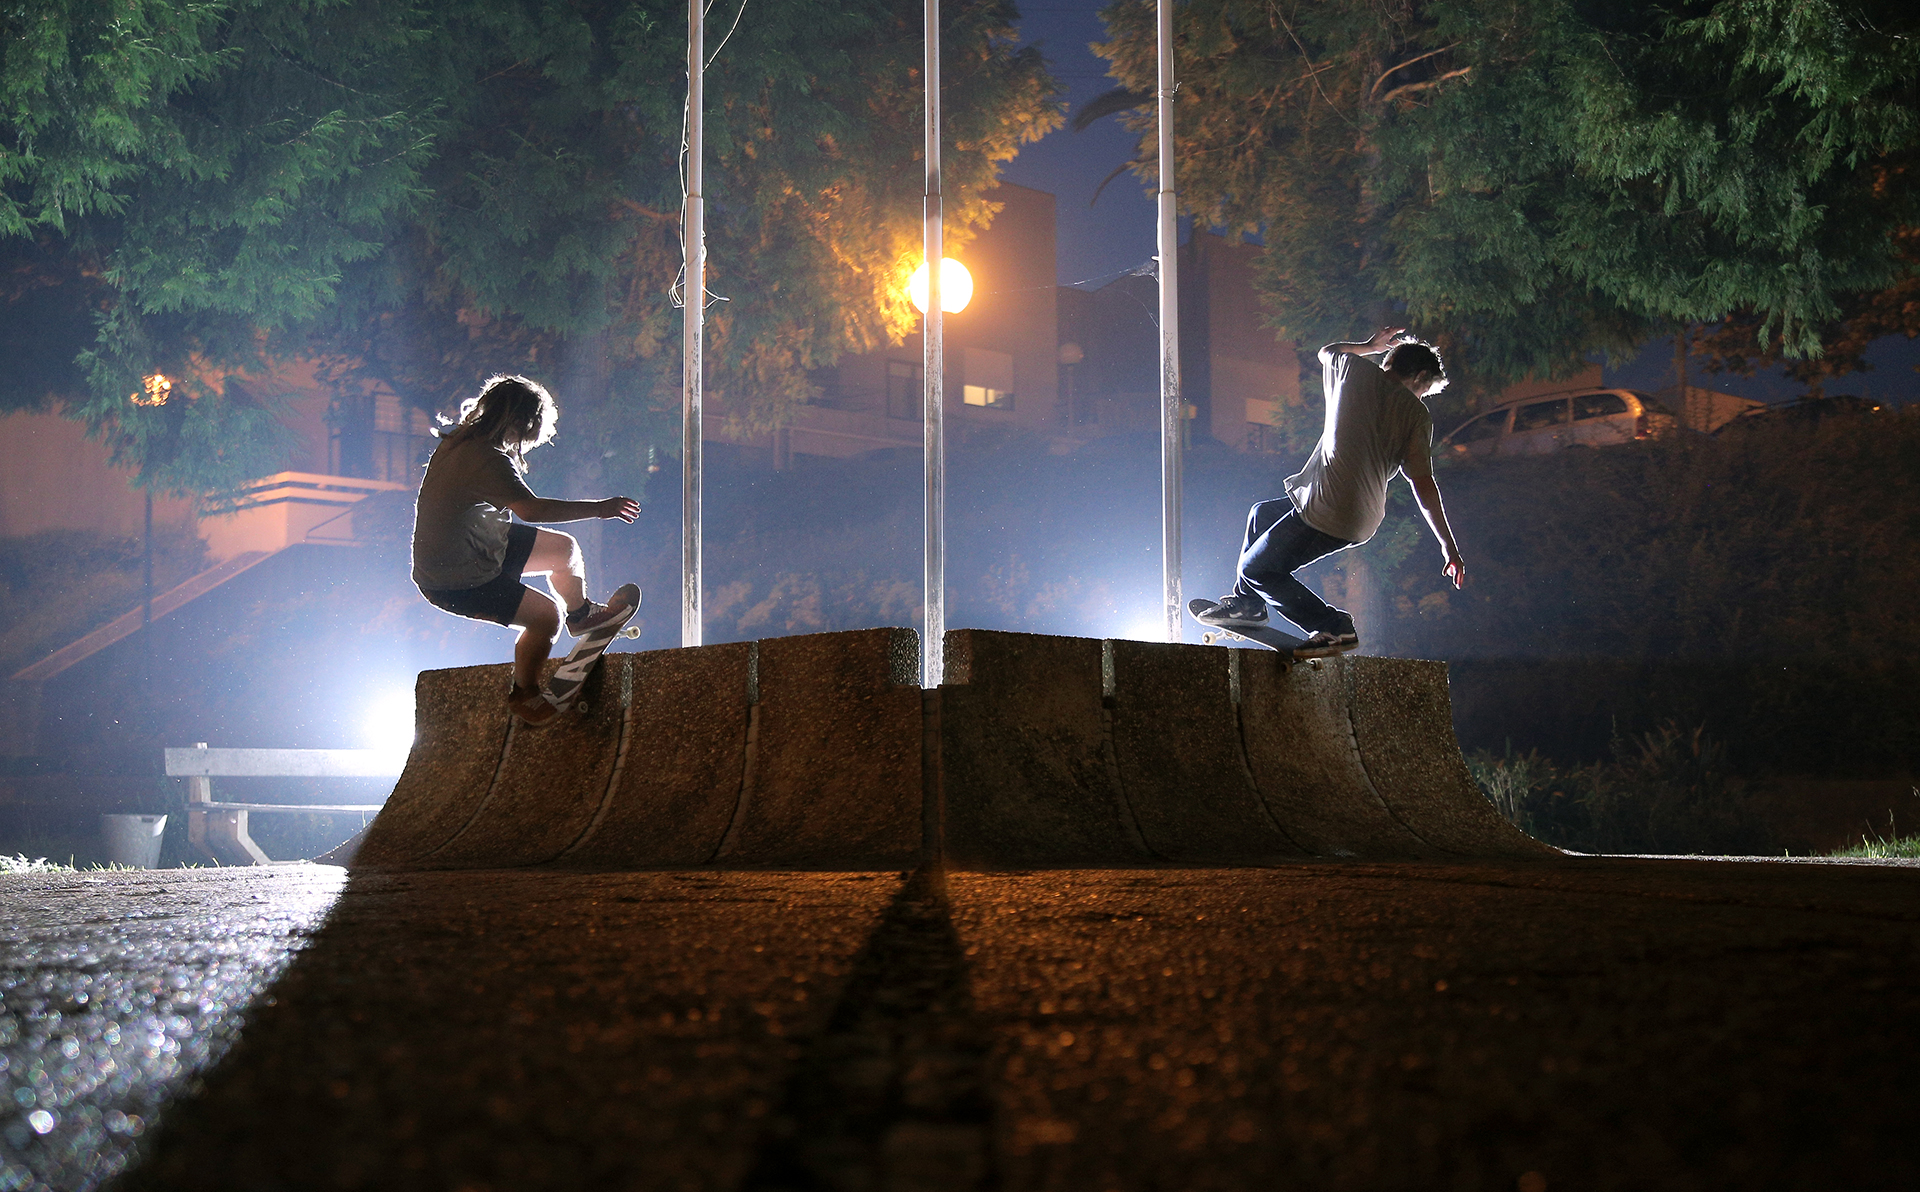 Skateboarding_Life_Renato_Lainho_com (2c)